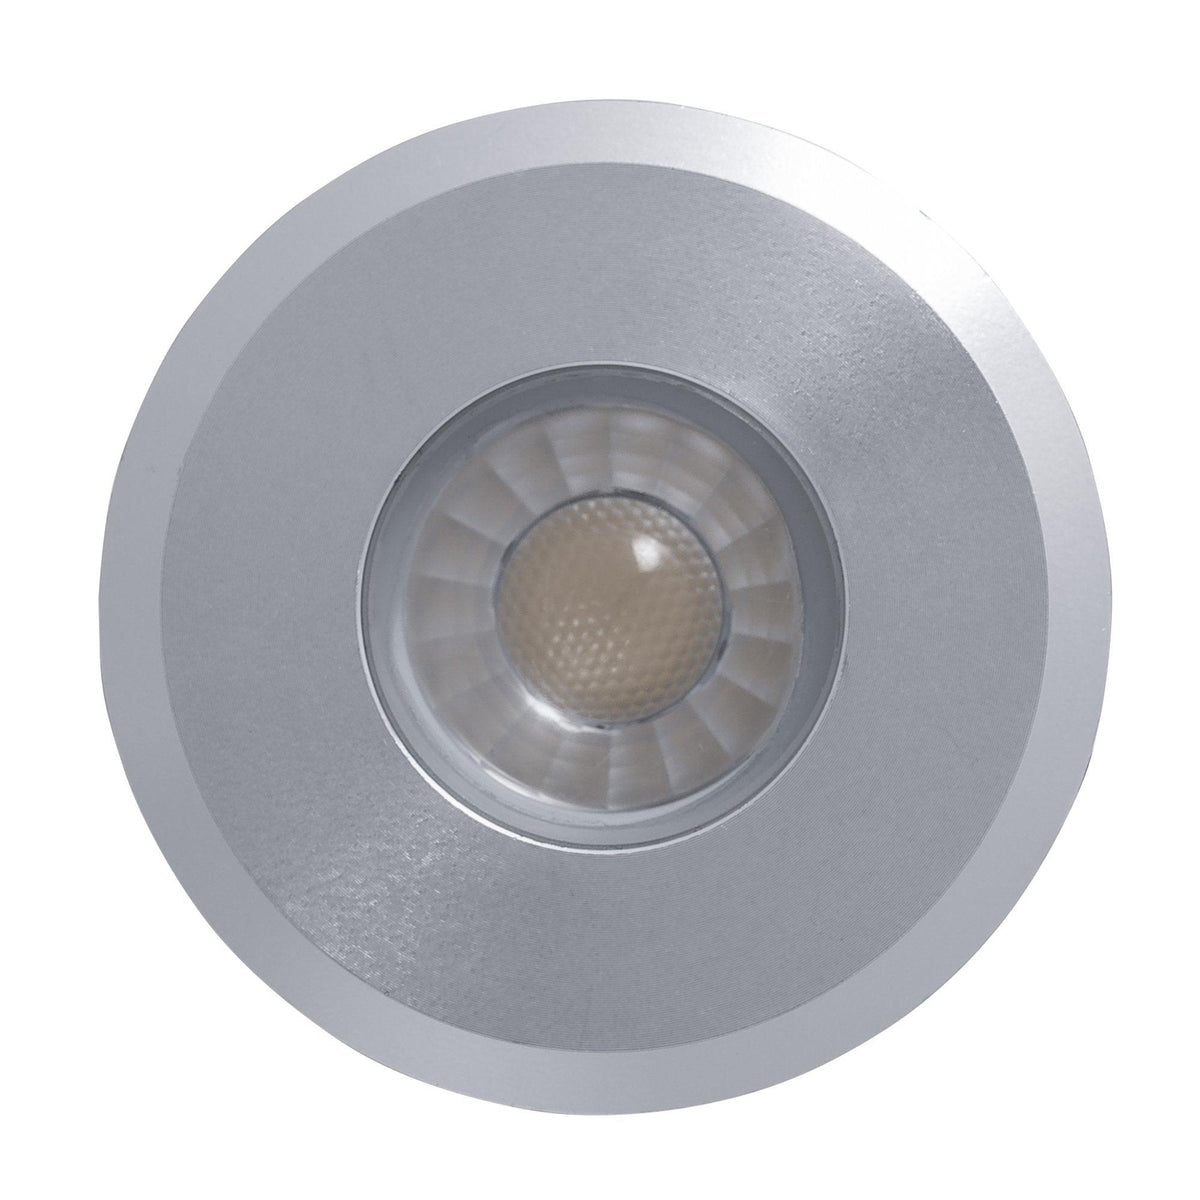 Havit Lighting Inground Lights HV2881C / Silver Elite Silver Aluminium LED Deck or inground lights - HV2881-SLV HV2881C-SLV